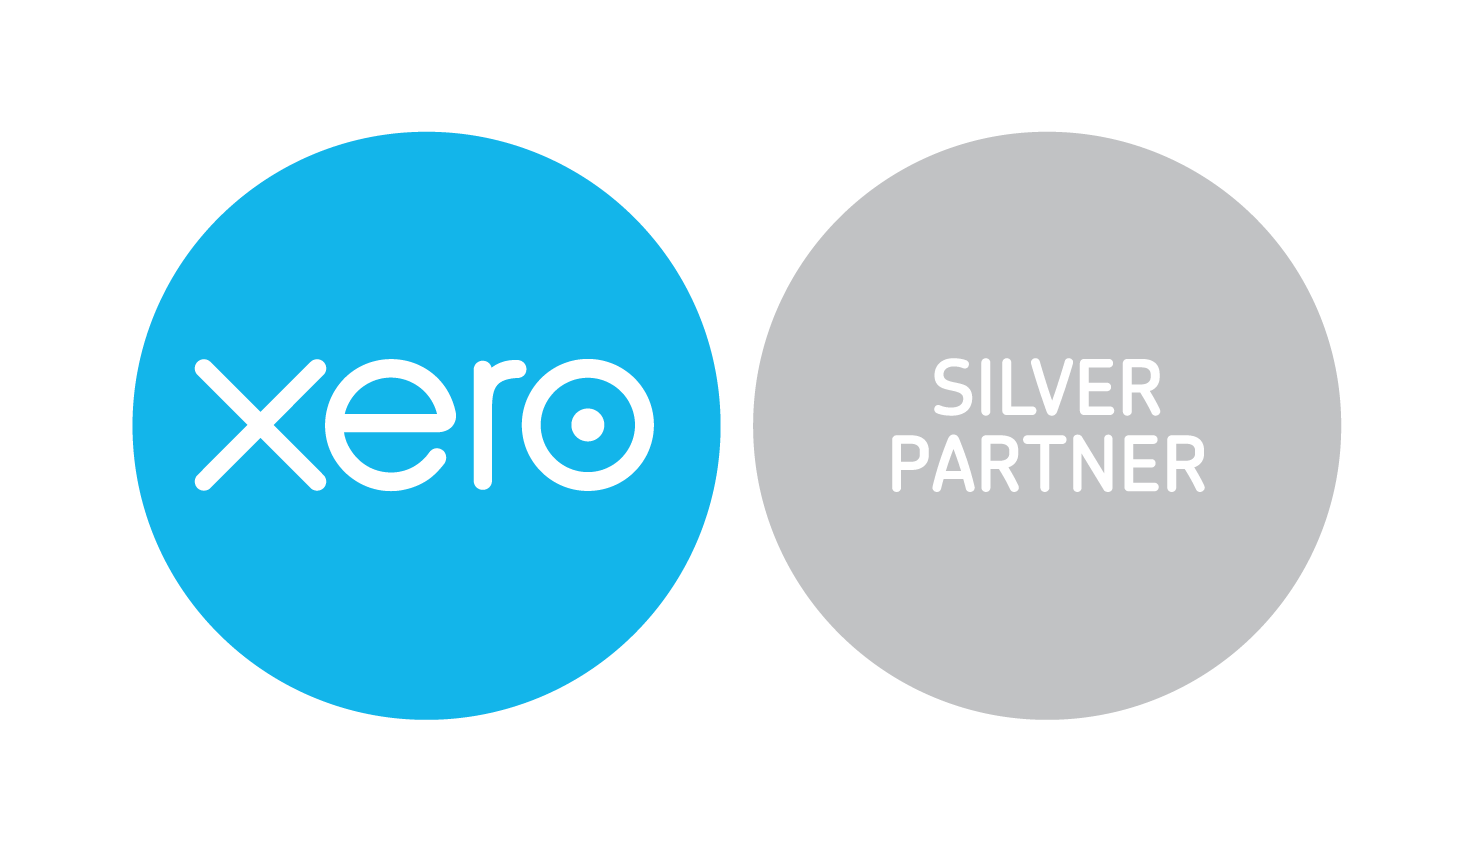 XERO Certified Advisor